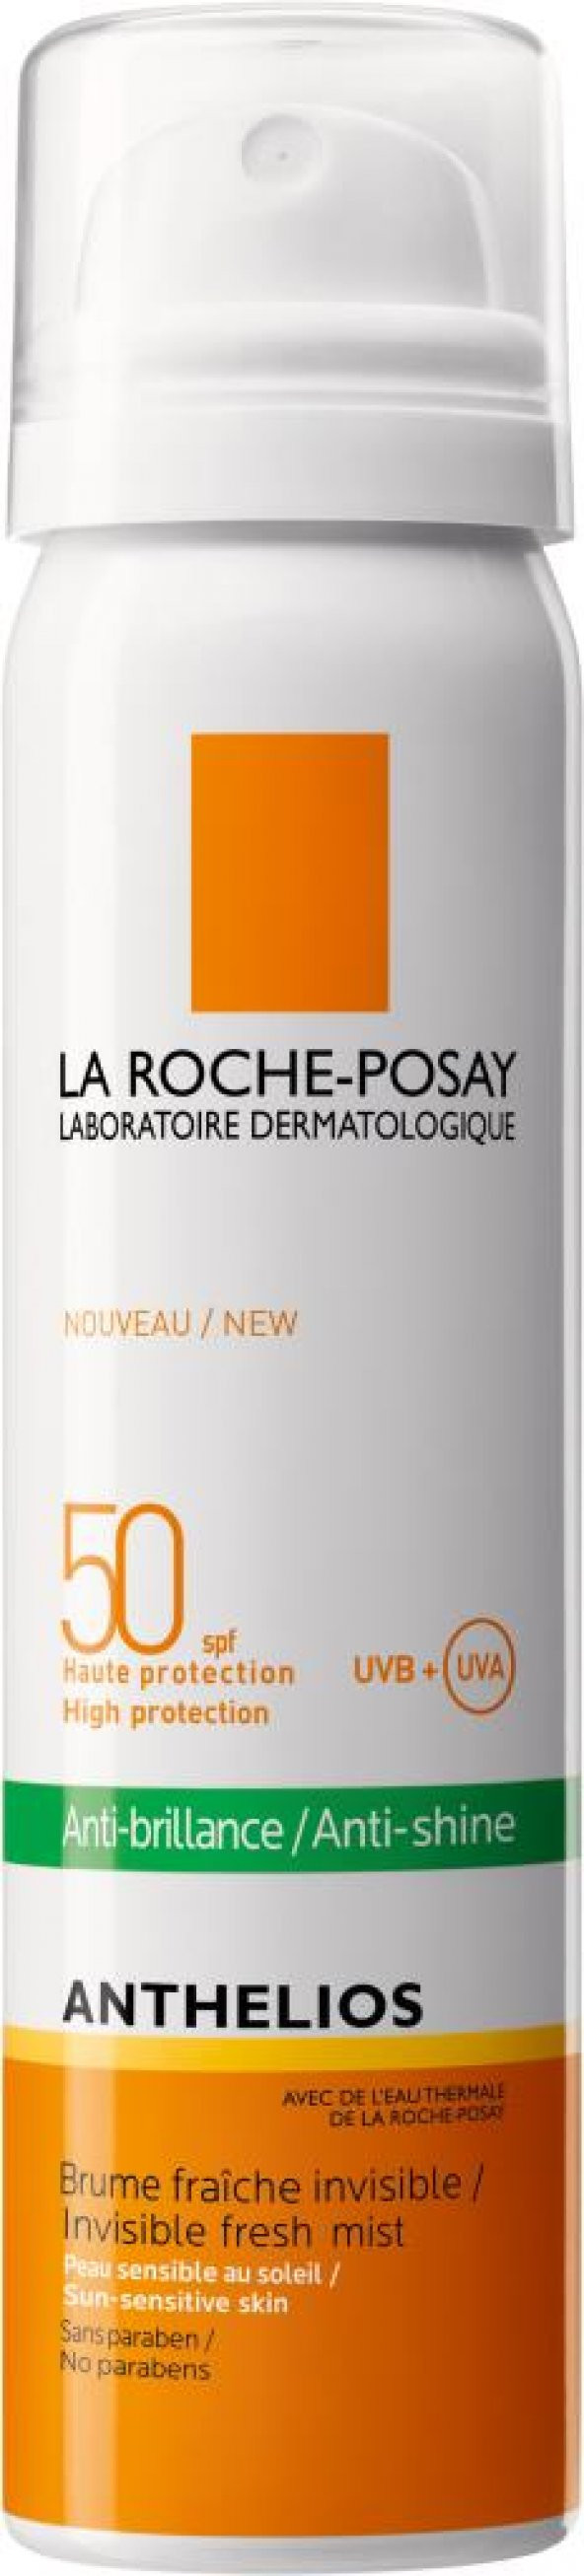 La Roche Posay Anthelios Anti Shine Spf50 75 ml (01/2021)